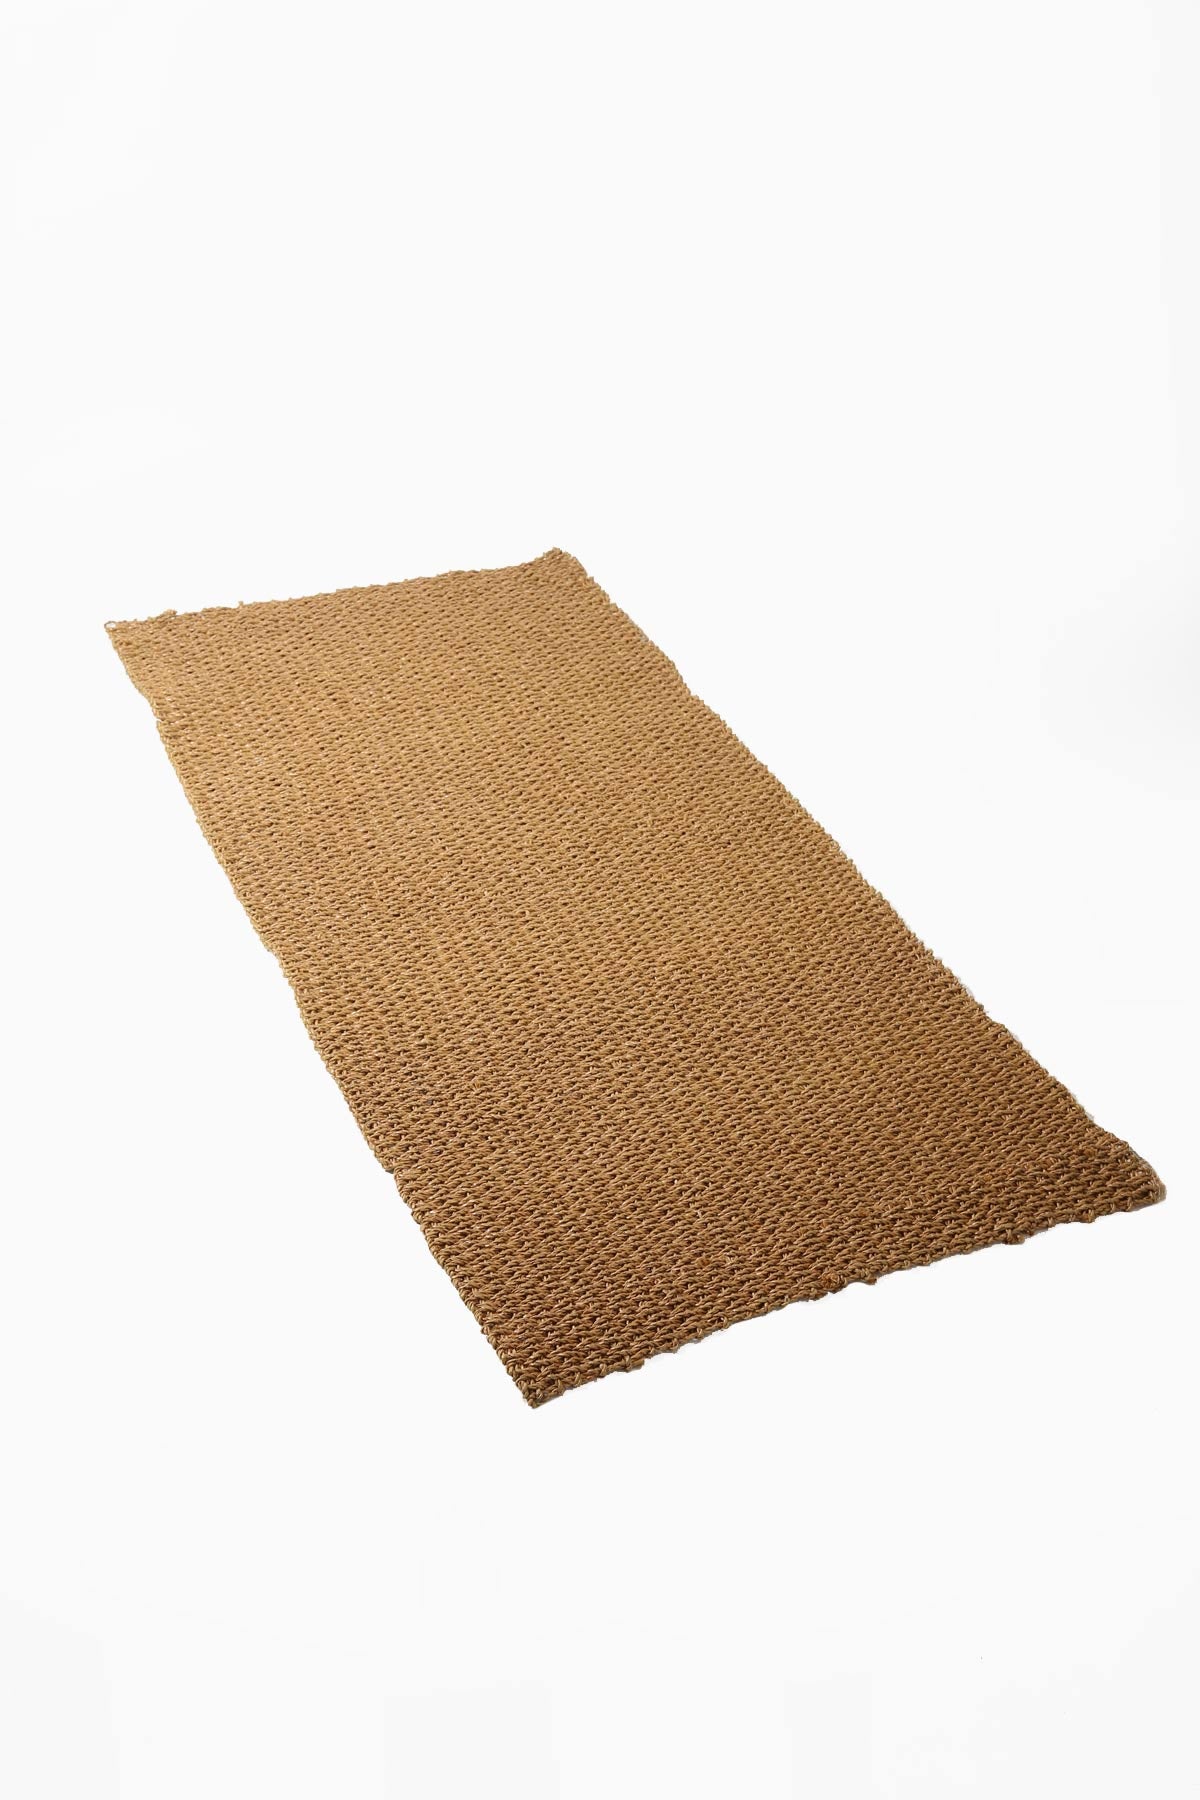 Hand Woven Recycled Plastic Floor Mat - Golden Brown